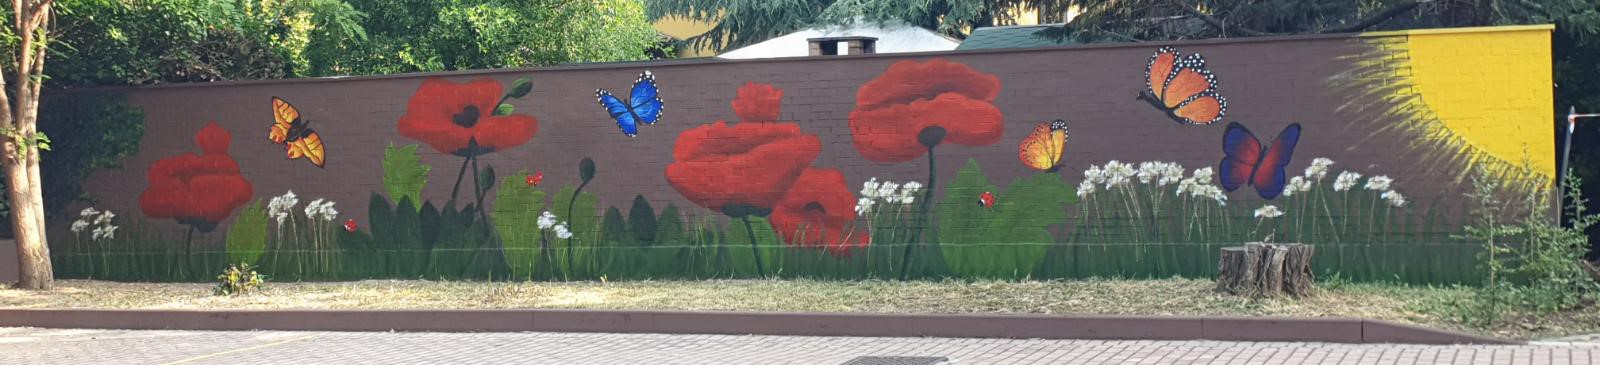 Centro Anziani di via Montanara a Parma: il murale della solidarietà che porta allegria nel giardino